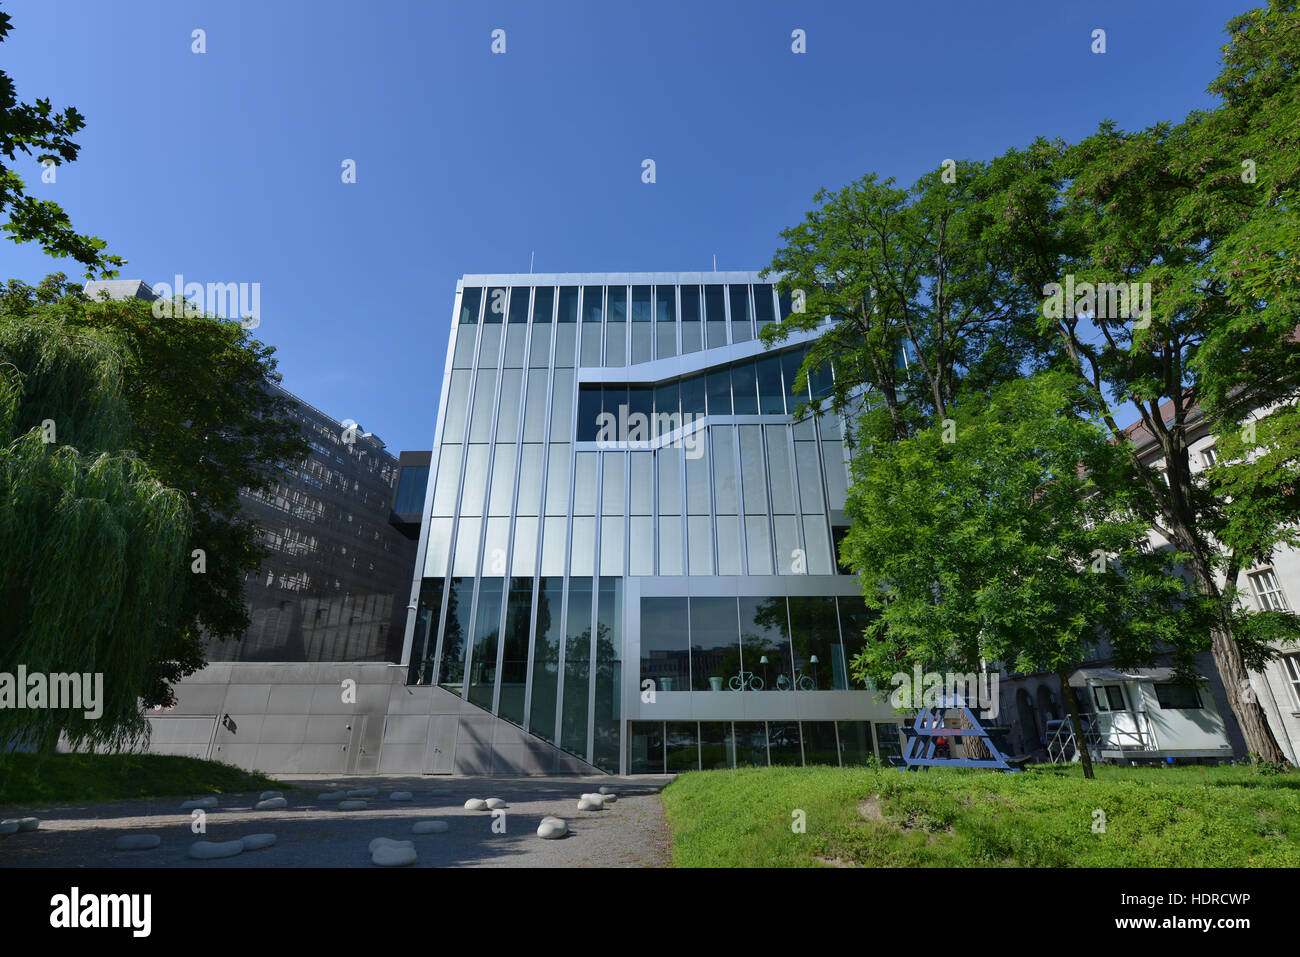 Niederlande Botschaft, Klosterstrasse, Mitte, Berlin, Deutschland Foto de stock